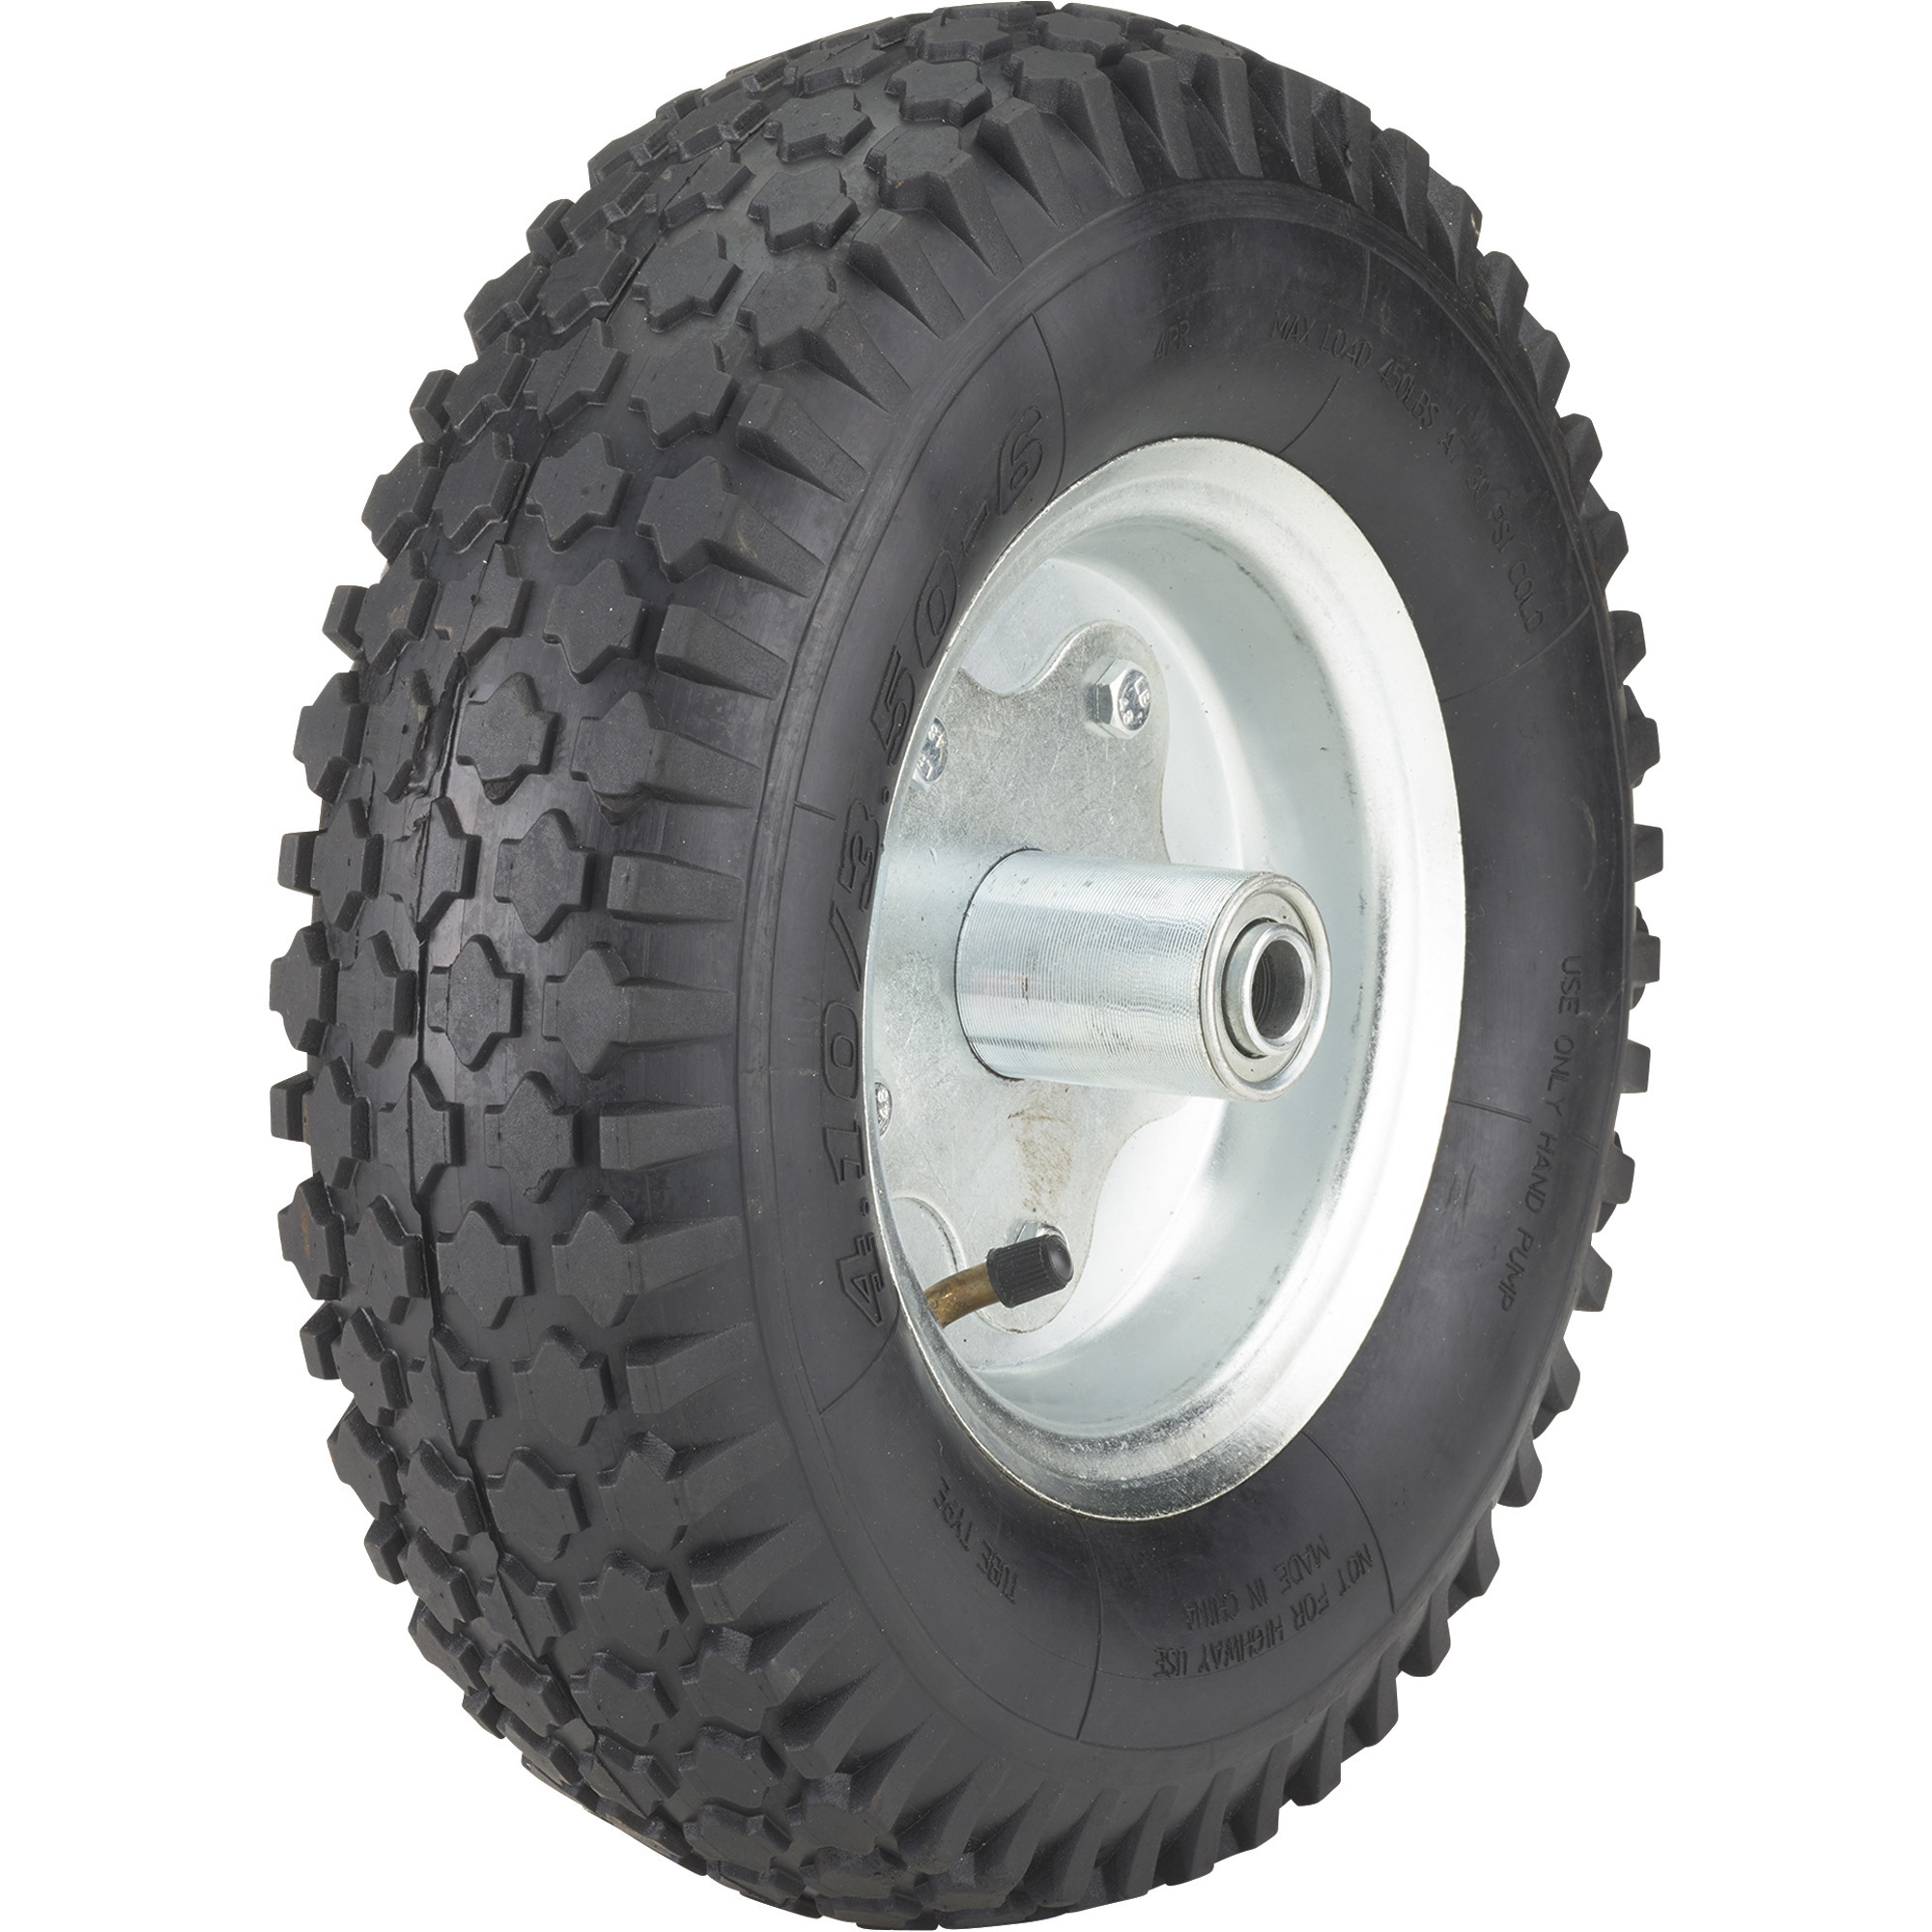 Ironton 12Inch Pneumatic Wheel and Tire-- 450-Lb. Capacity, Knobby Tread